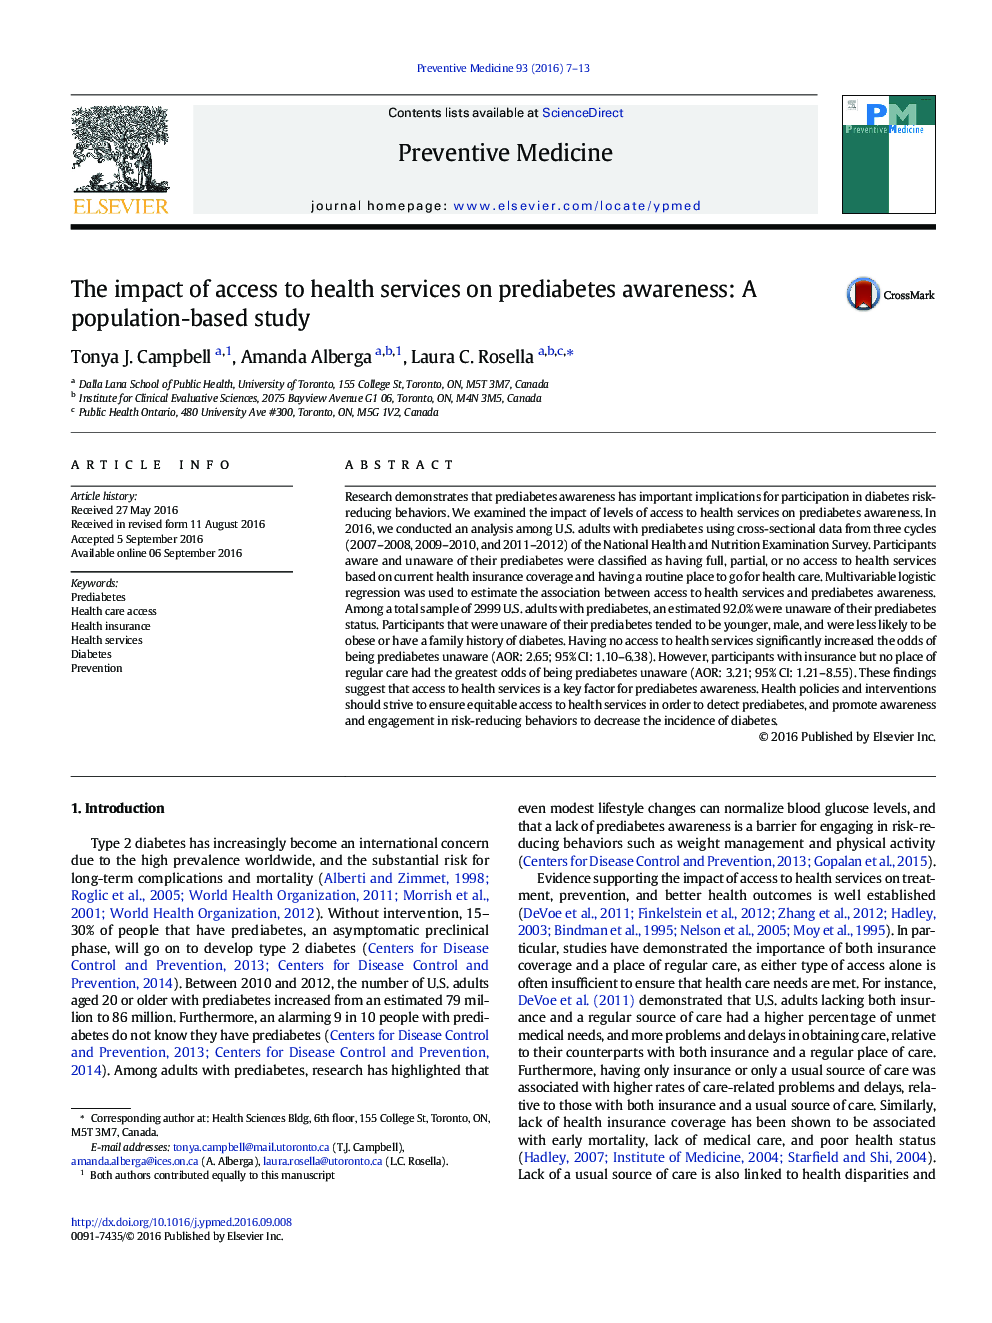 تاثیر دسترسی به خدمات بهداشتی بر آگاهی ابتلا به پیش دیابت: مطالعه مبتنی بر جمعیت